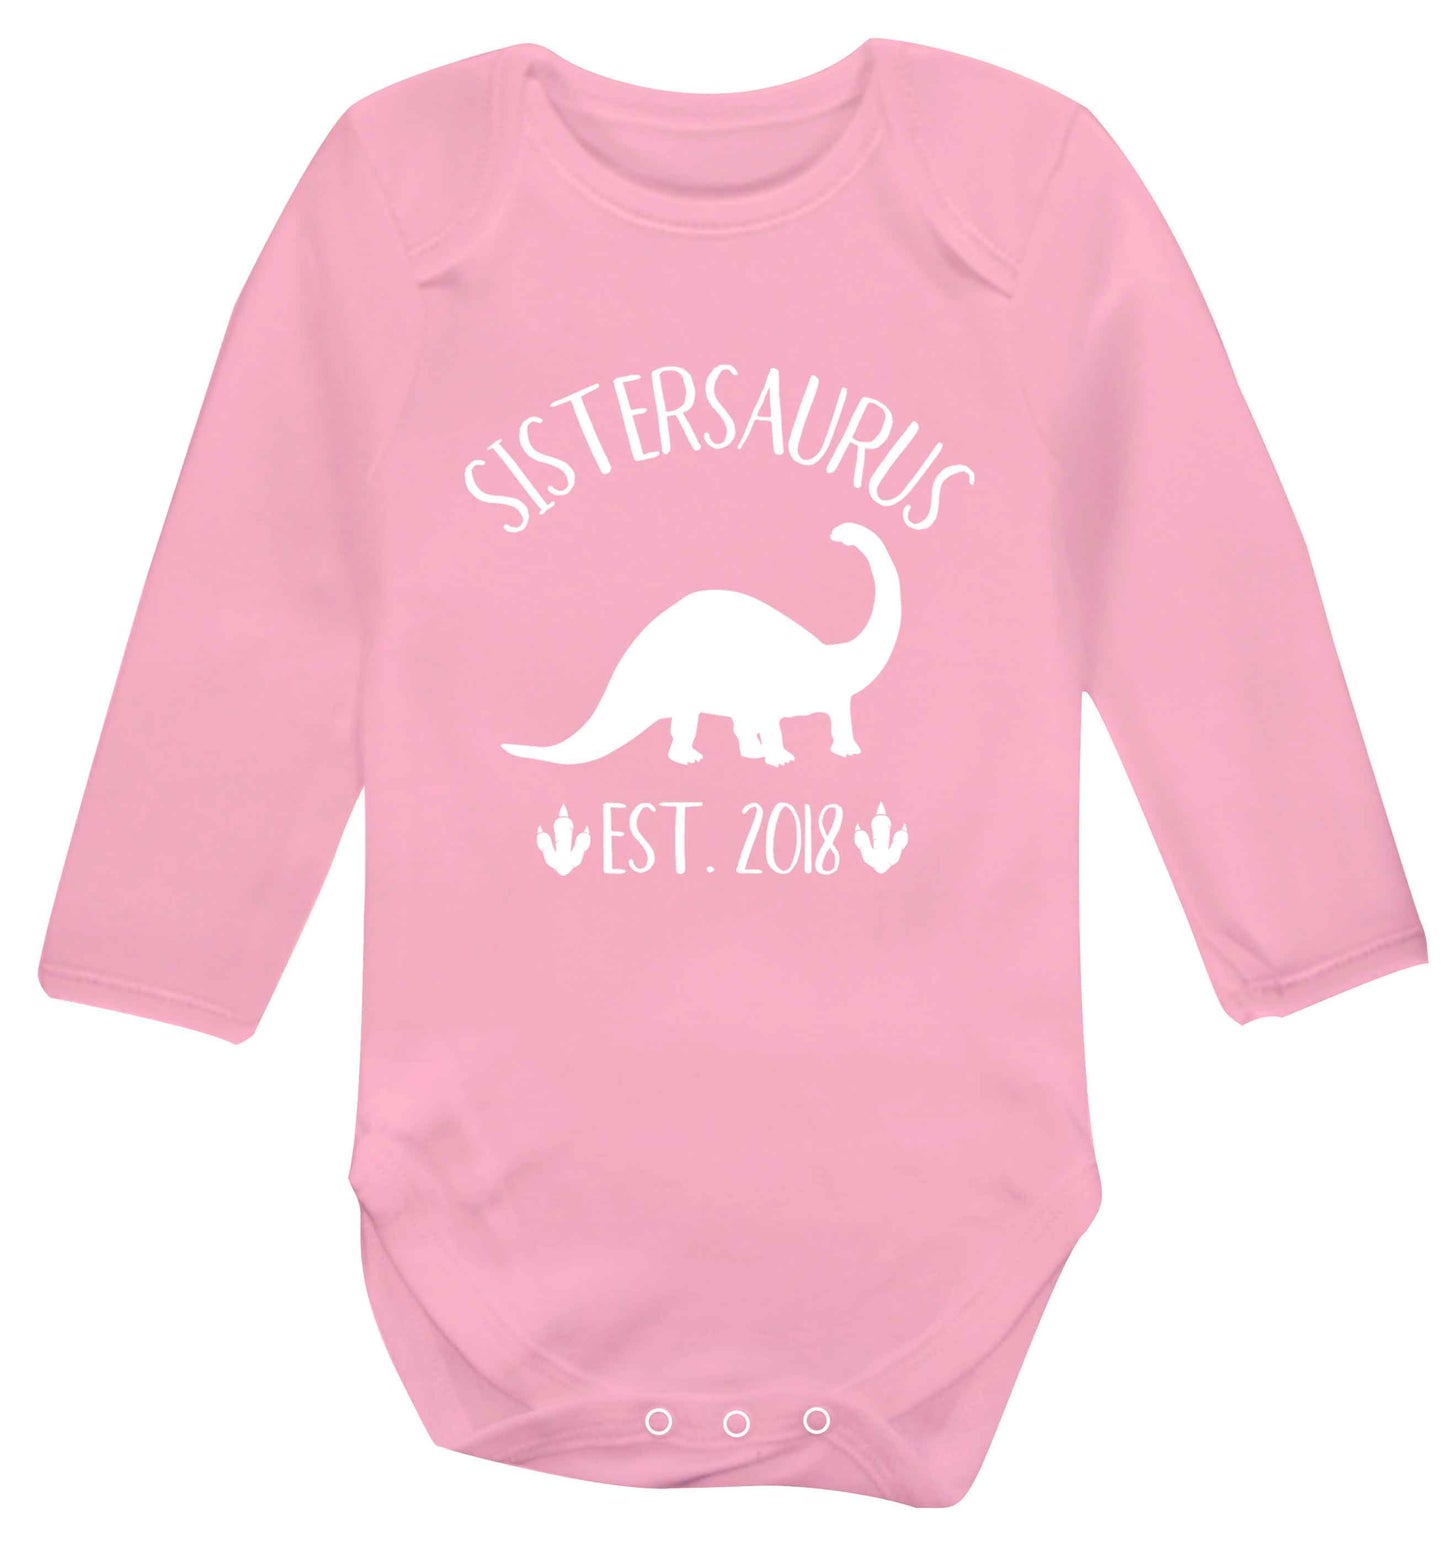 Personalised sistersaurus since (custom date) Baby Vest long sleeved pale pink 6-12 months